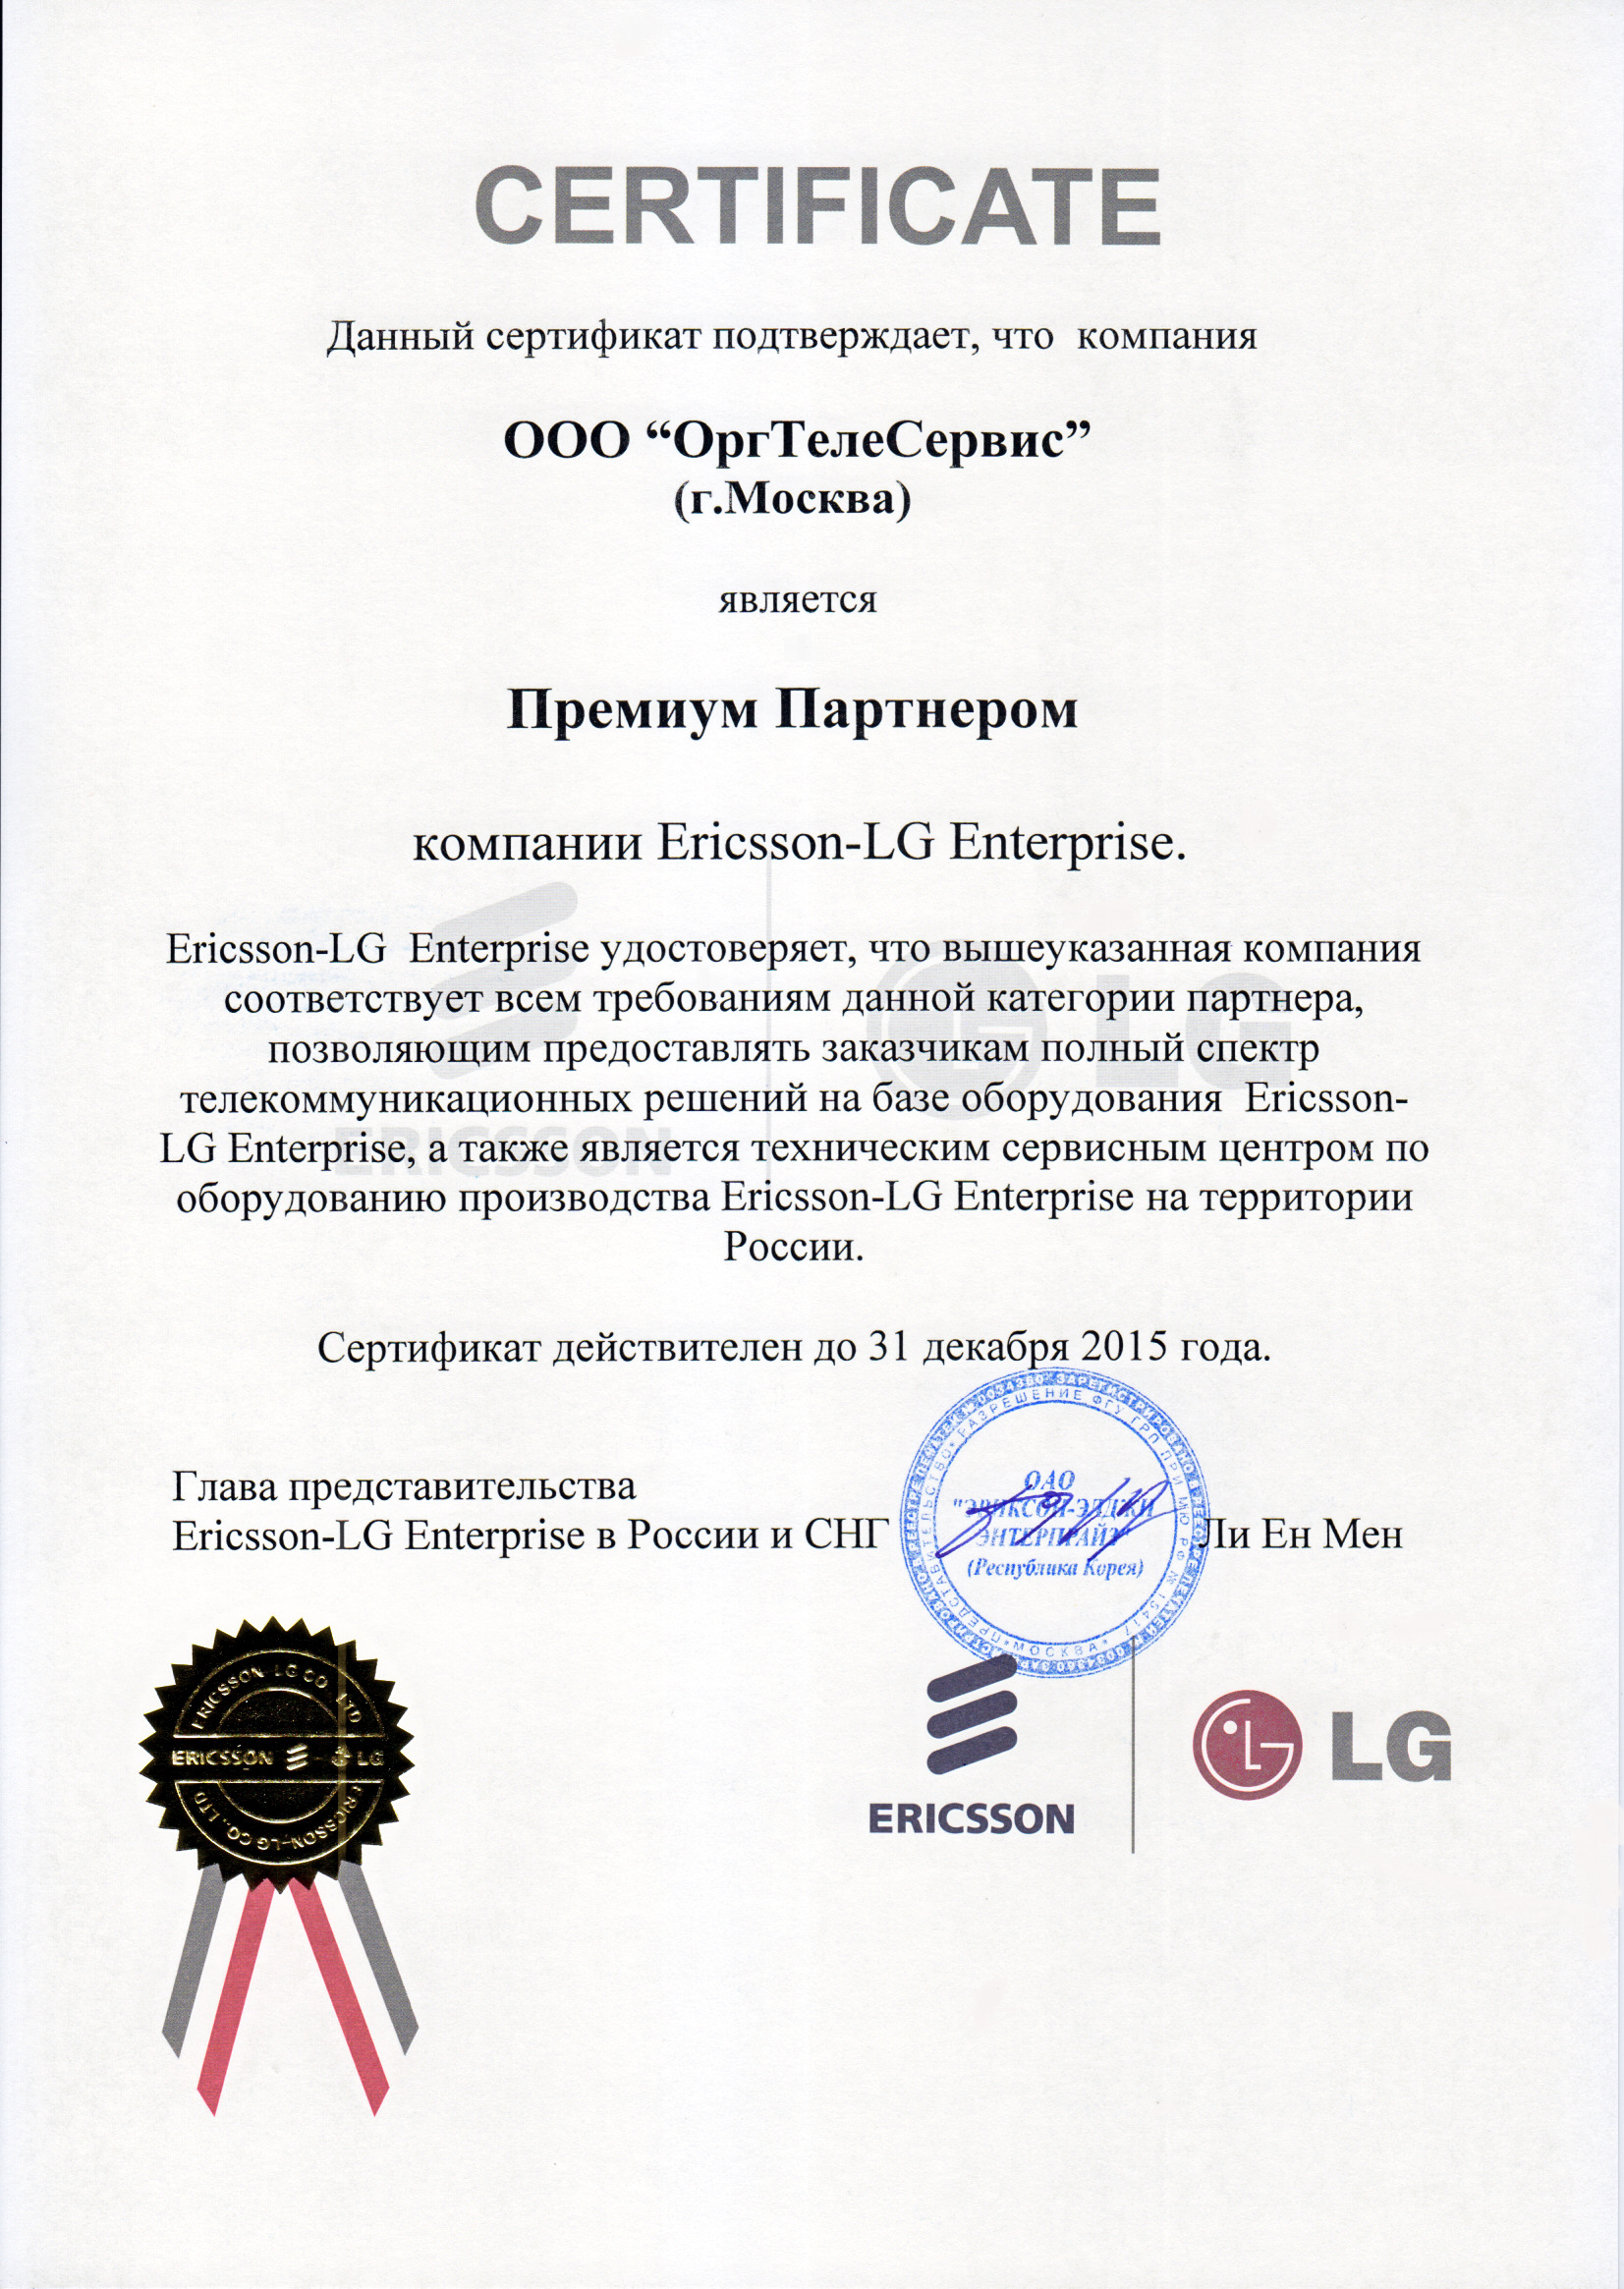 Сертификат партнера Ericsson-LG